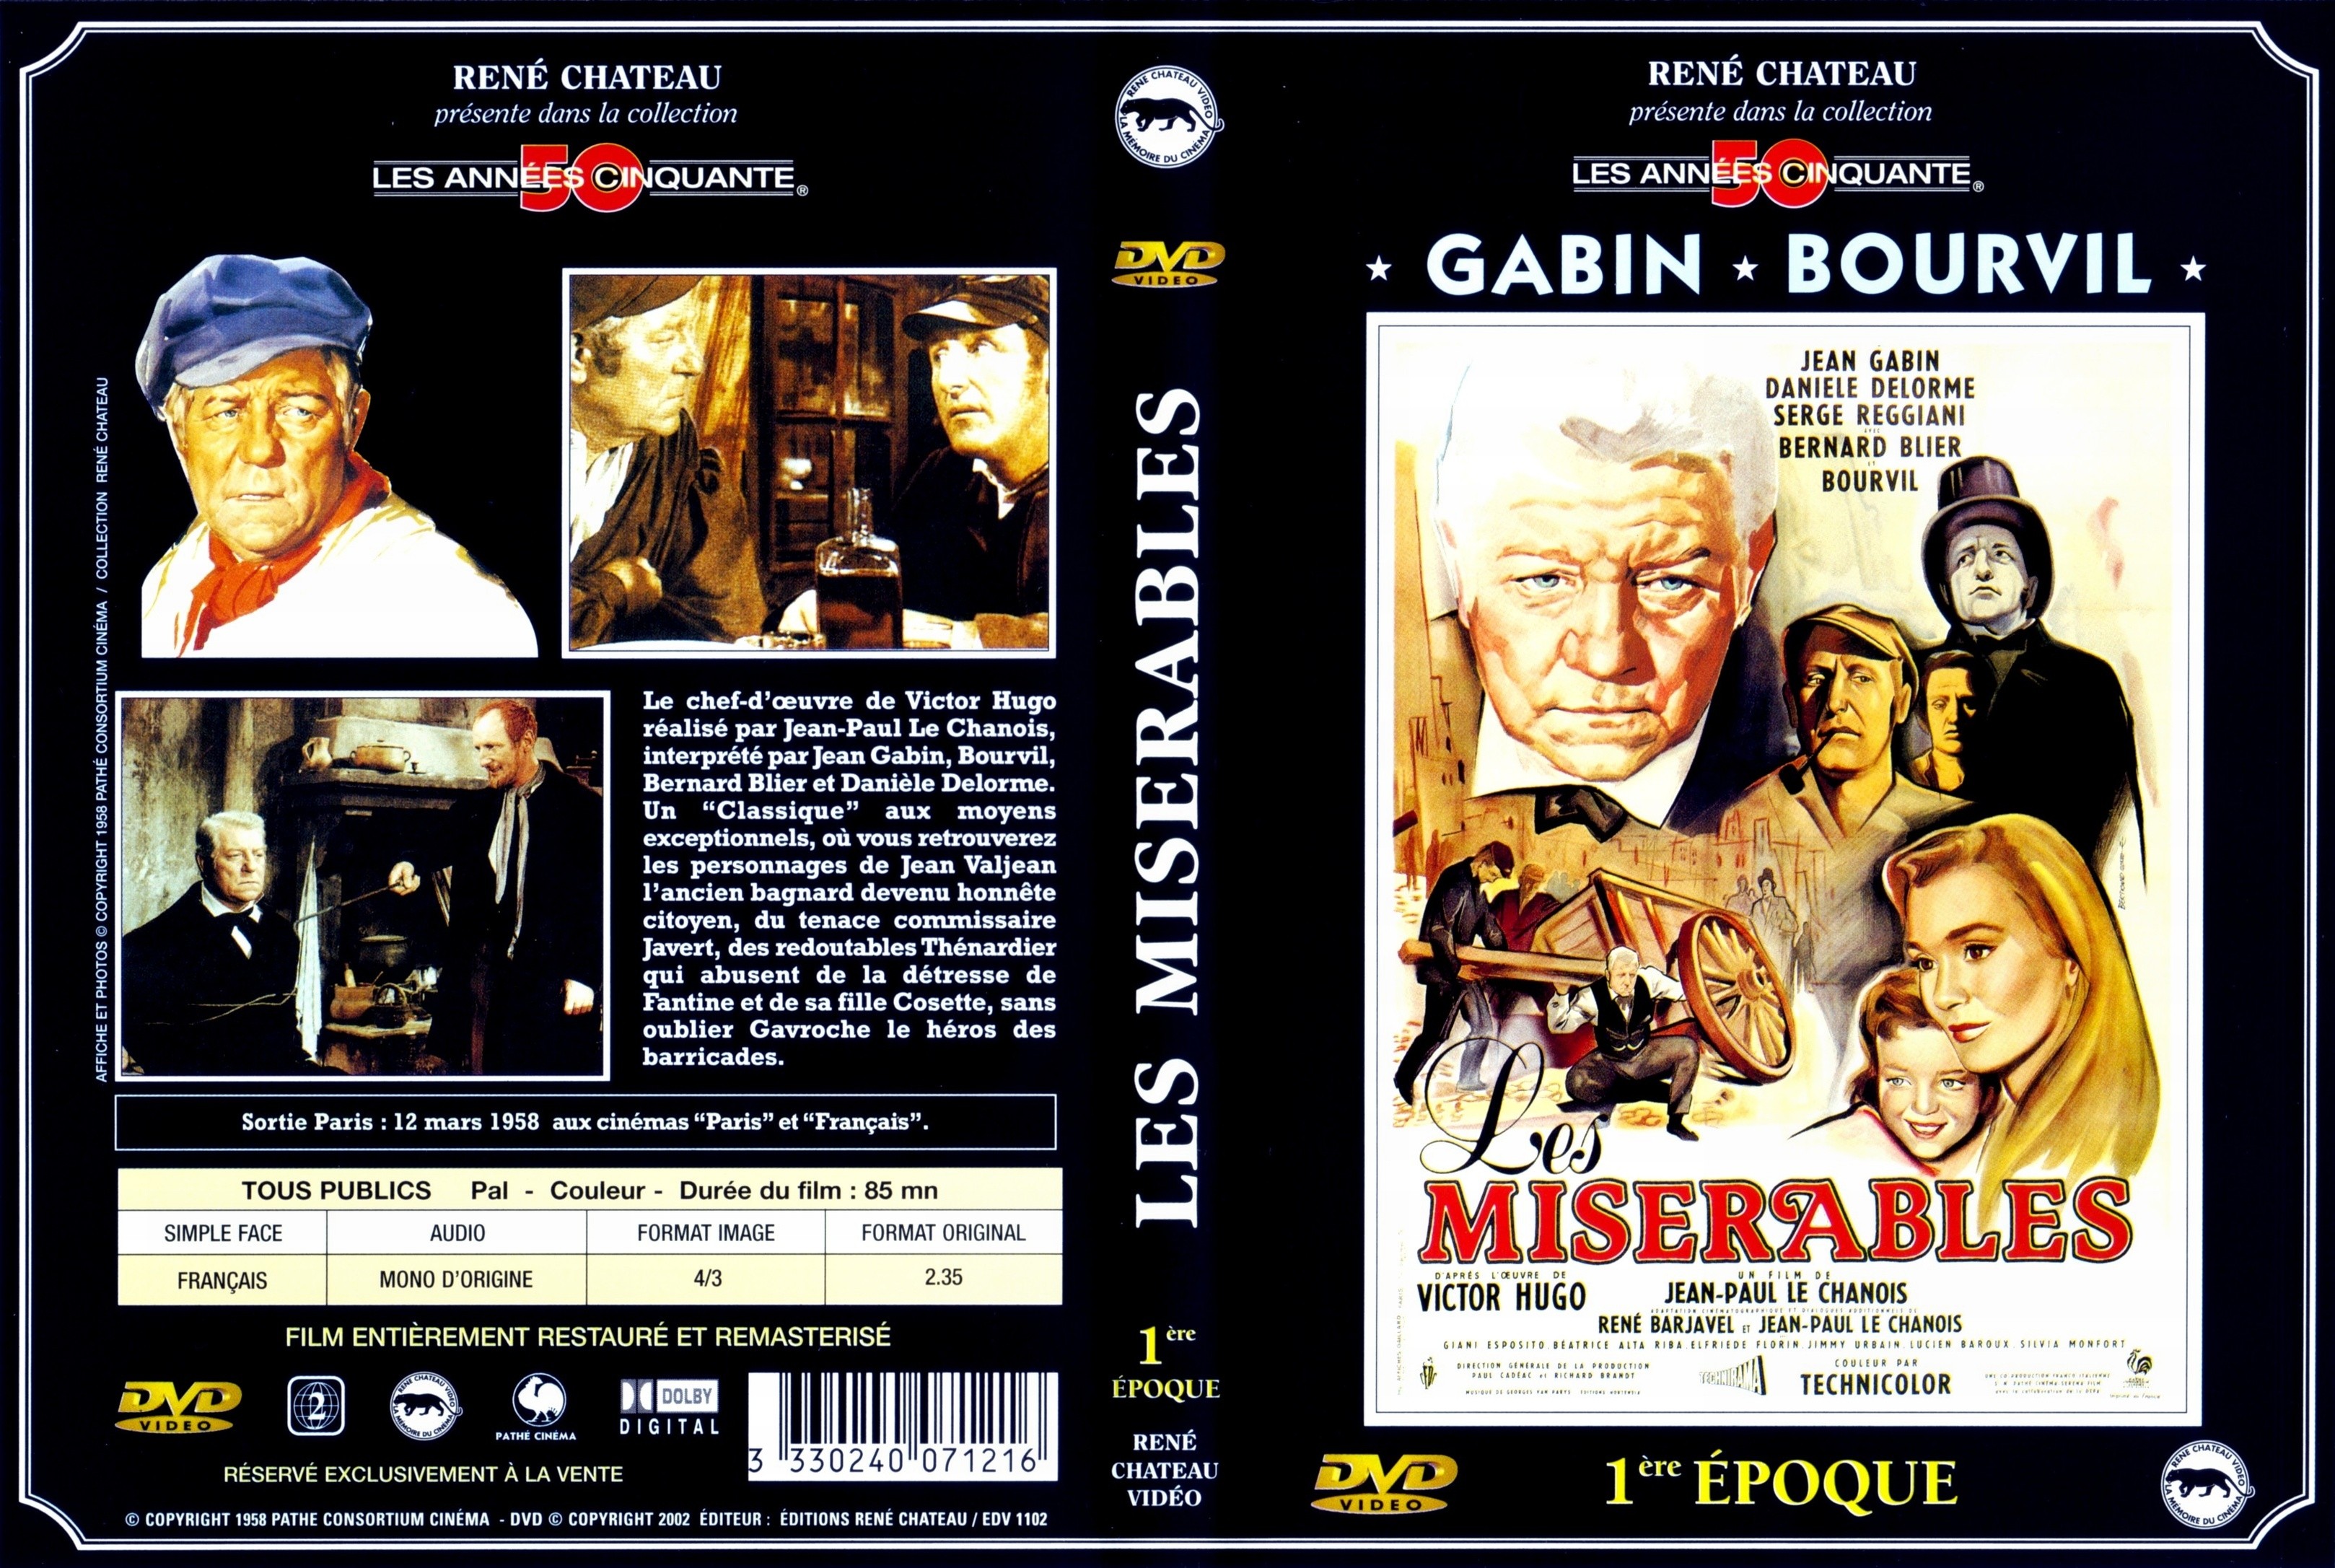 Jaquette DVD Les misrables (Gabin) 1 re poque